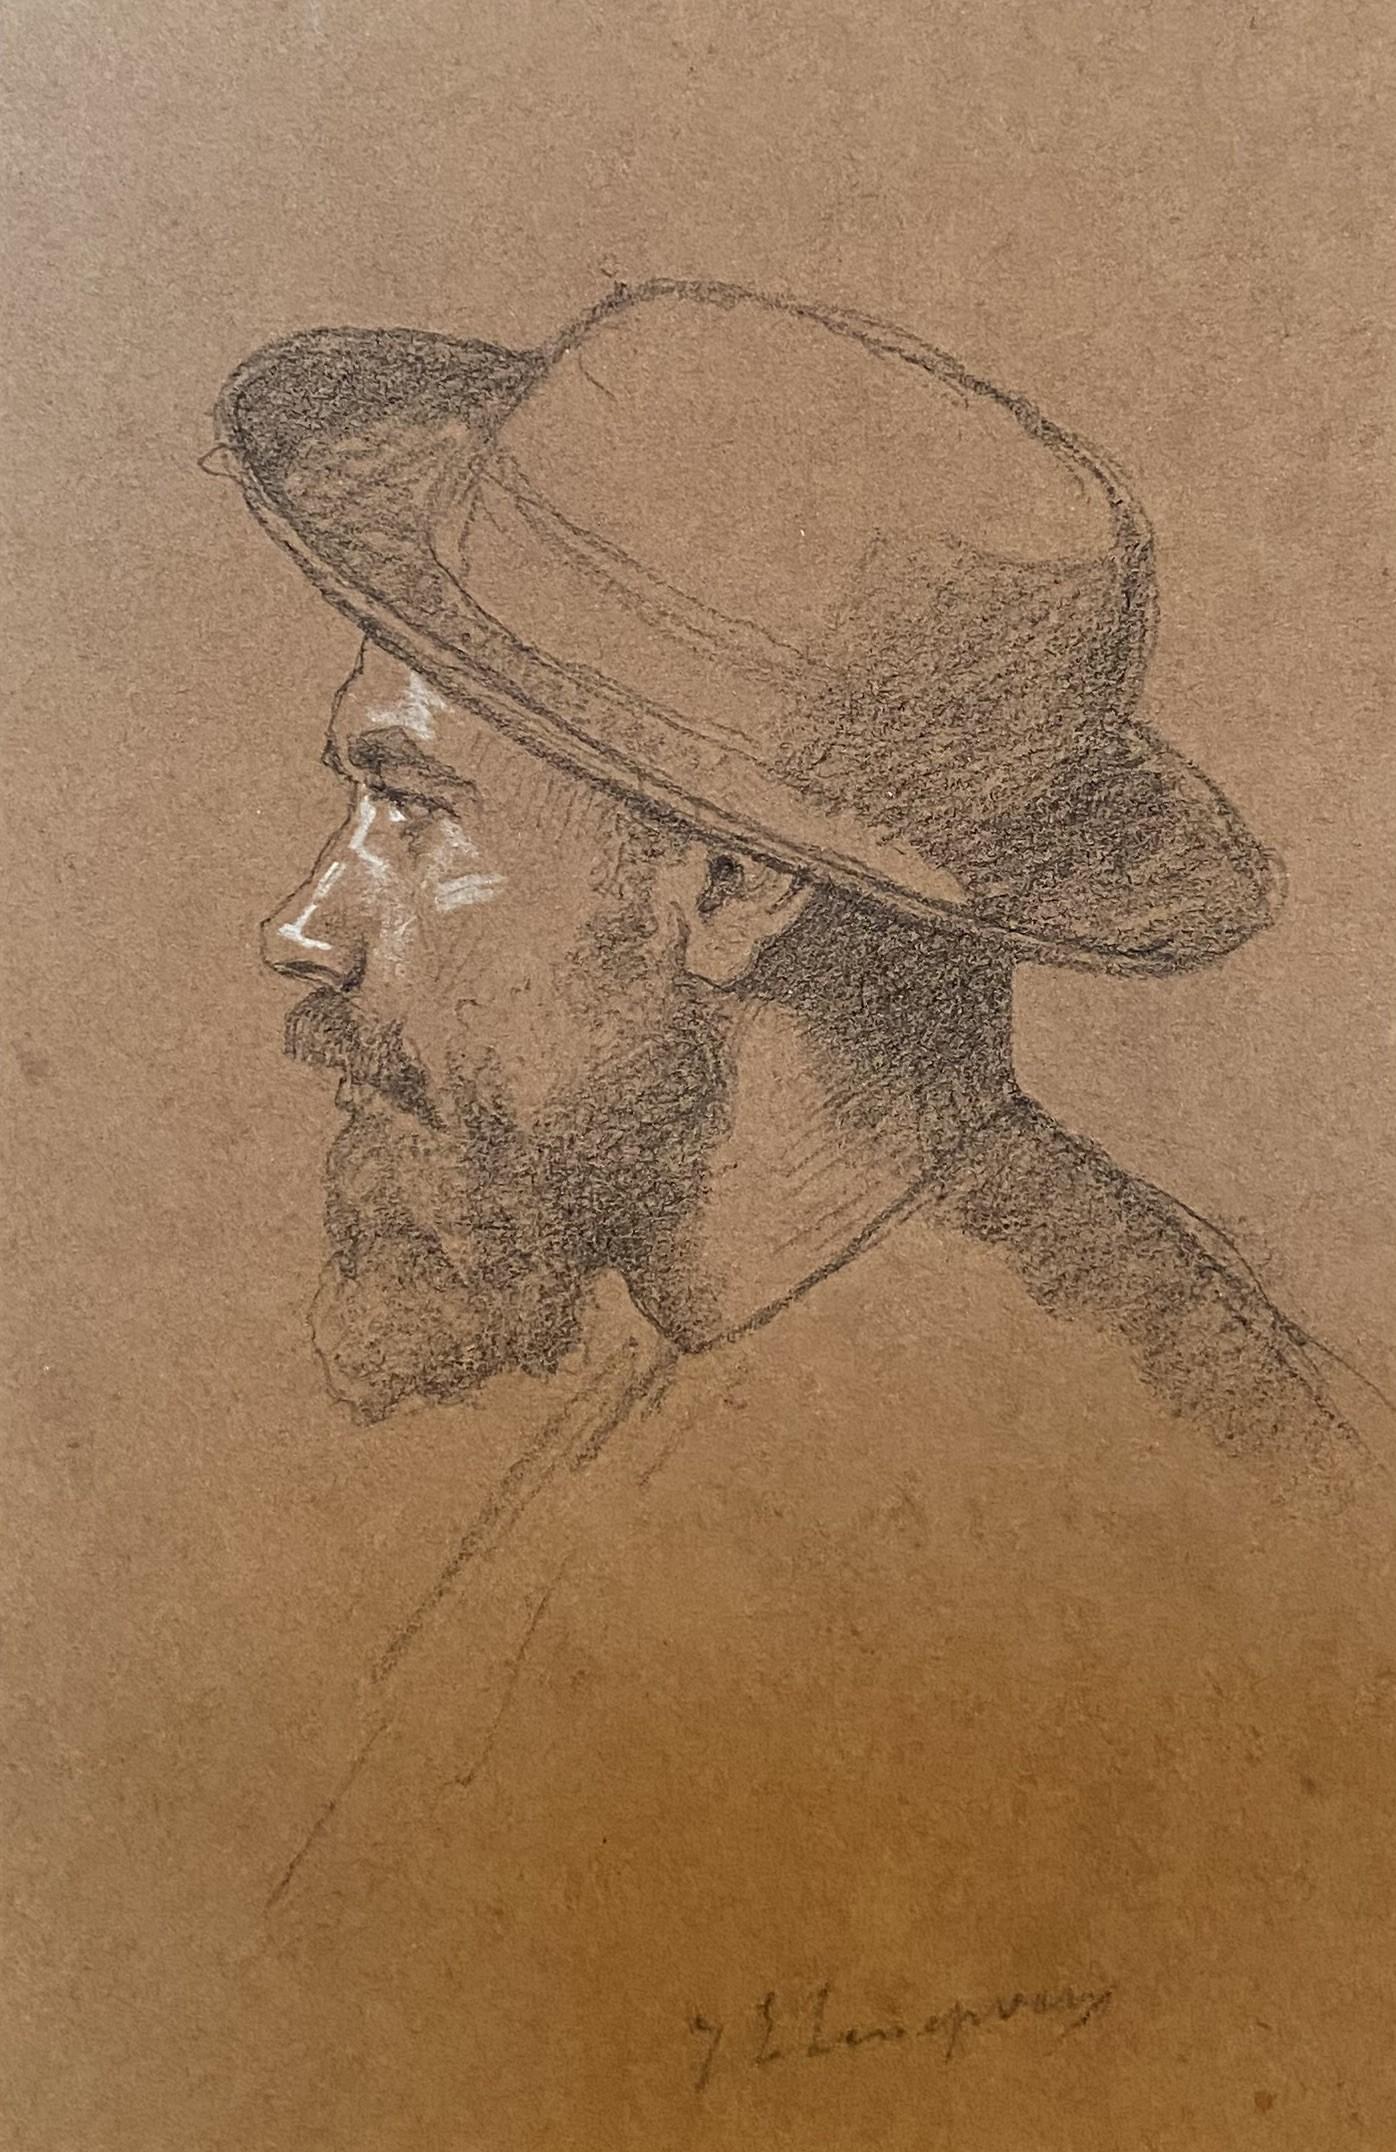 Jules-Eugène Lenepveu (1819-1898) 
Portrait d'un homme de profil
signé en bas à droite
Crayon et rehauts de gouache blanche sur papier
19.5 x 13 cm
Encadré :  29 x 22.7 cm

Jules-Eugène Lenepveu est bien sûr particulièrement connu pour ses peintures